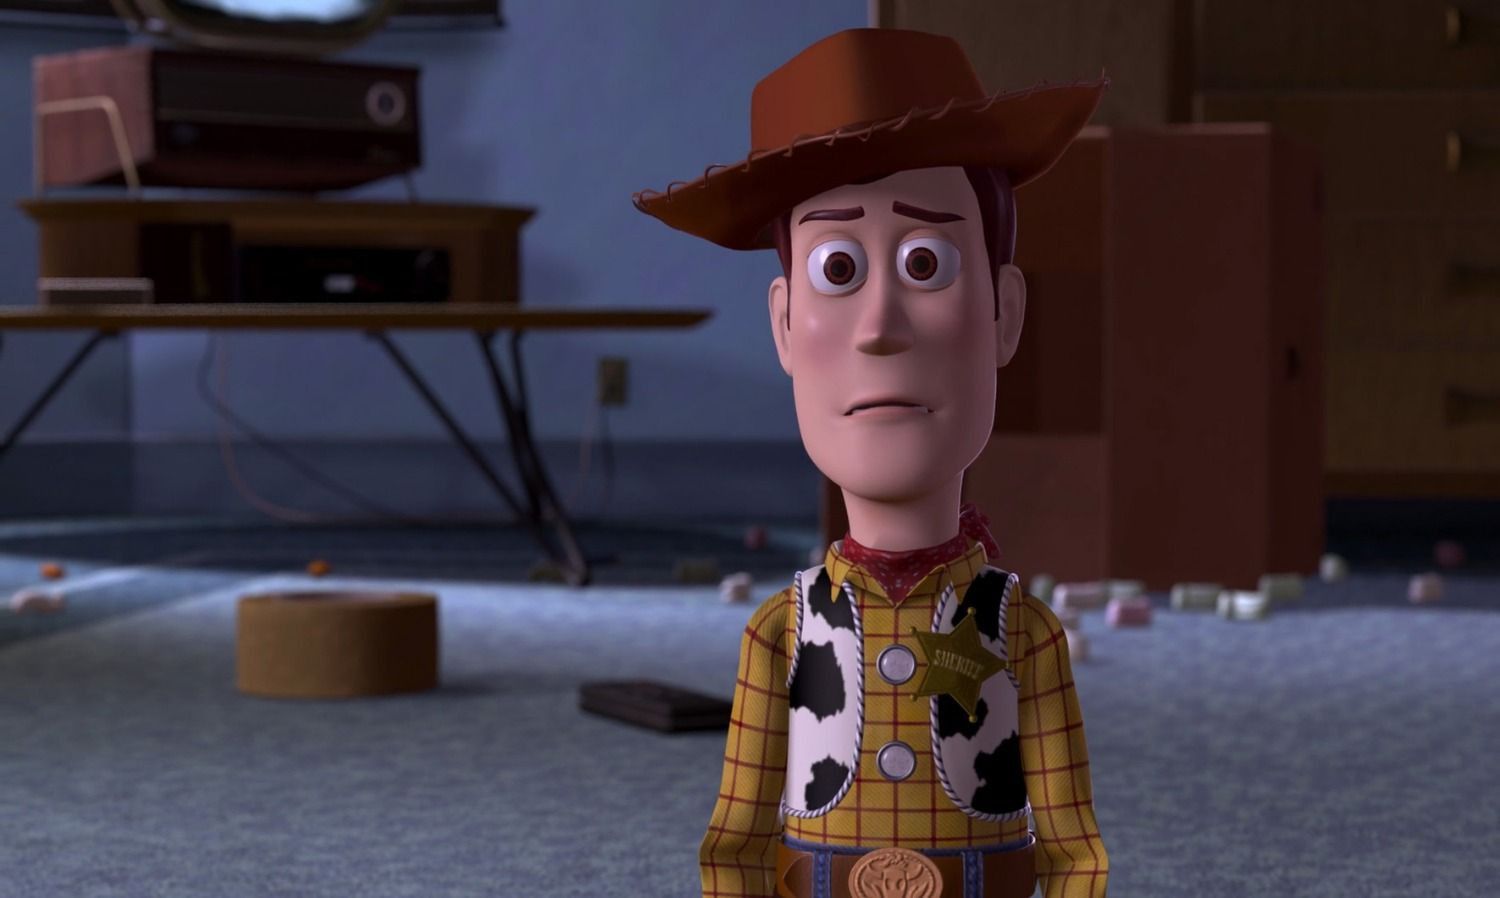 Artista da Pixar transforma personagem de Toy Story em herói de Os Incríveis